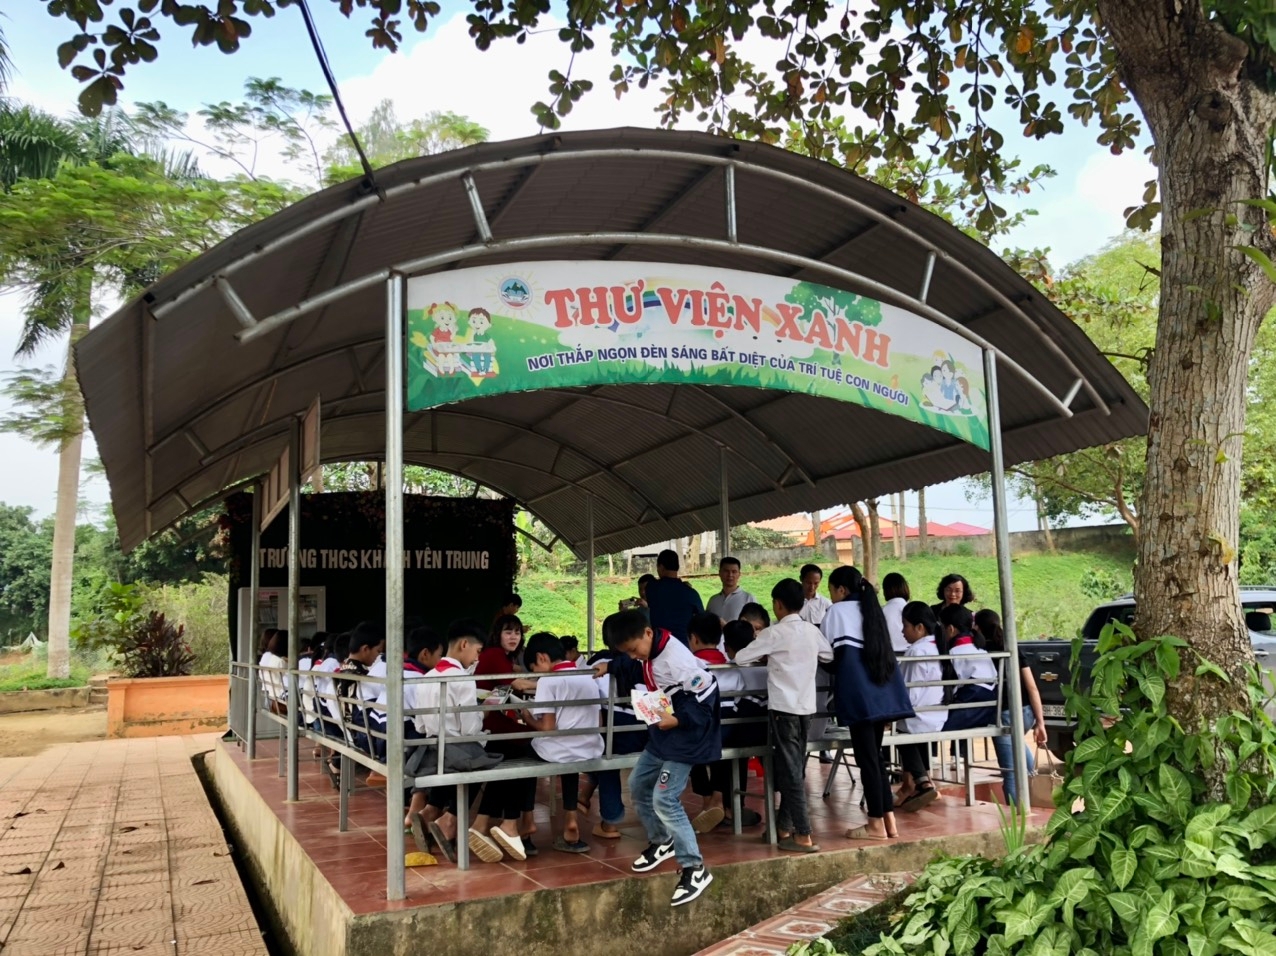 Thư viện xanh, nơi các em học sinh THCS Khánh Yên Trung đọc sách hàng ngày